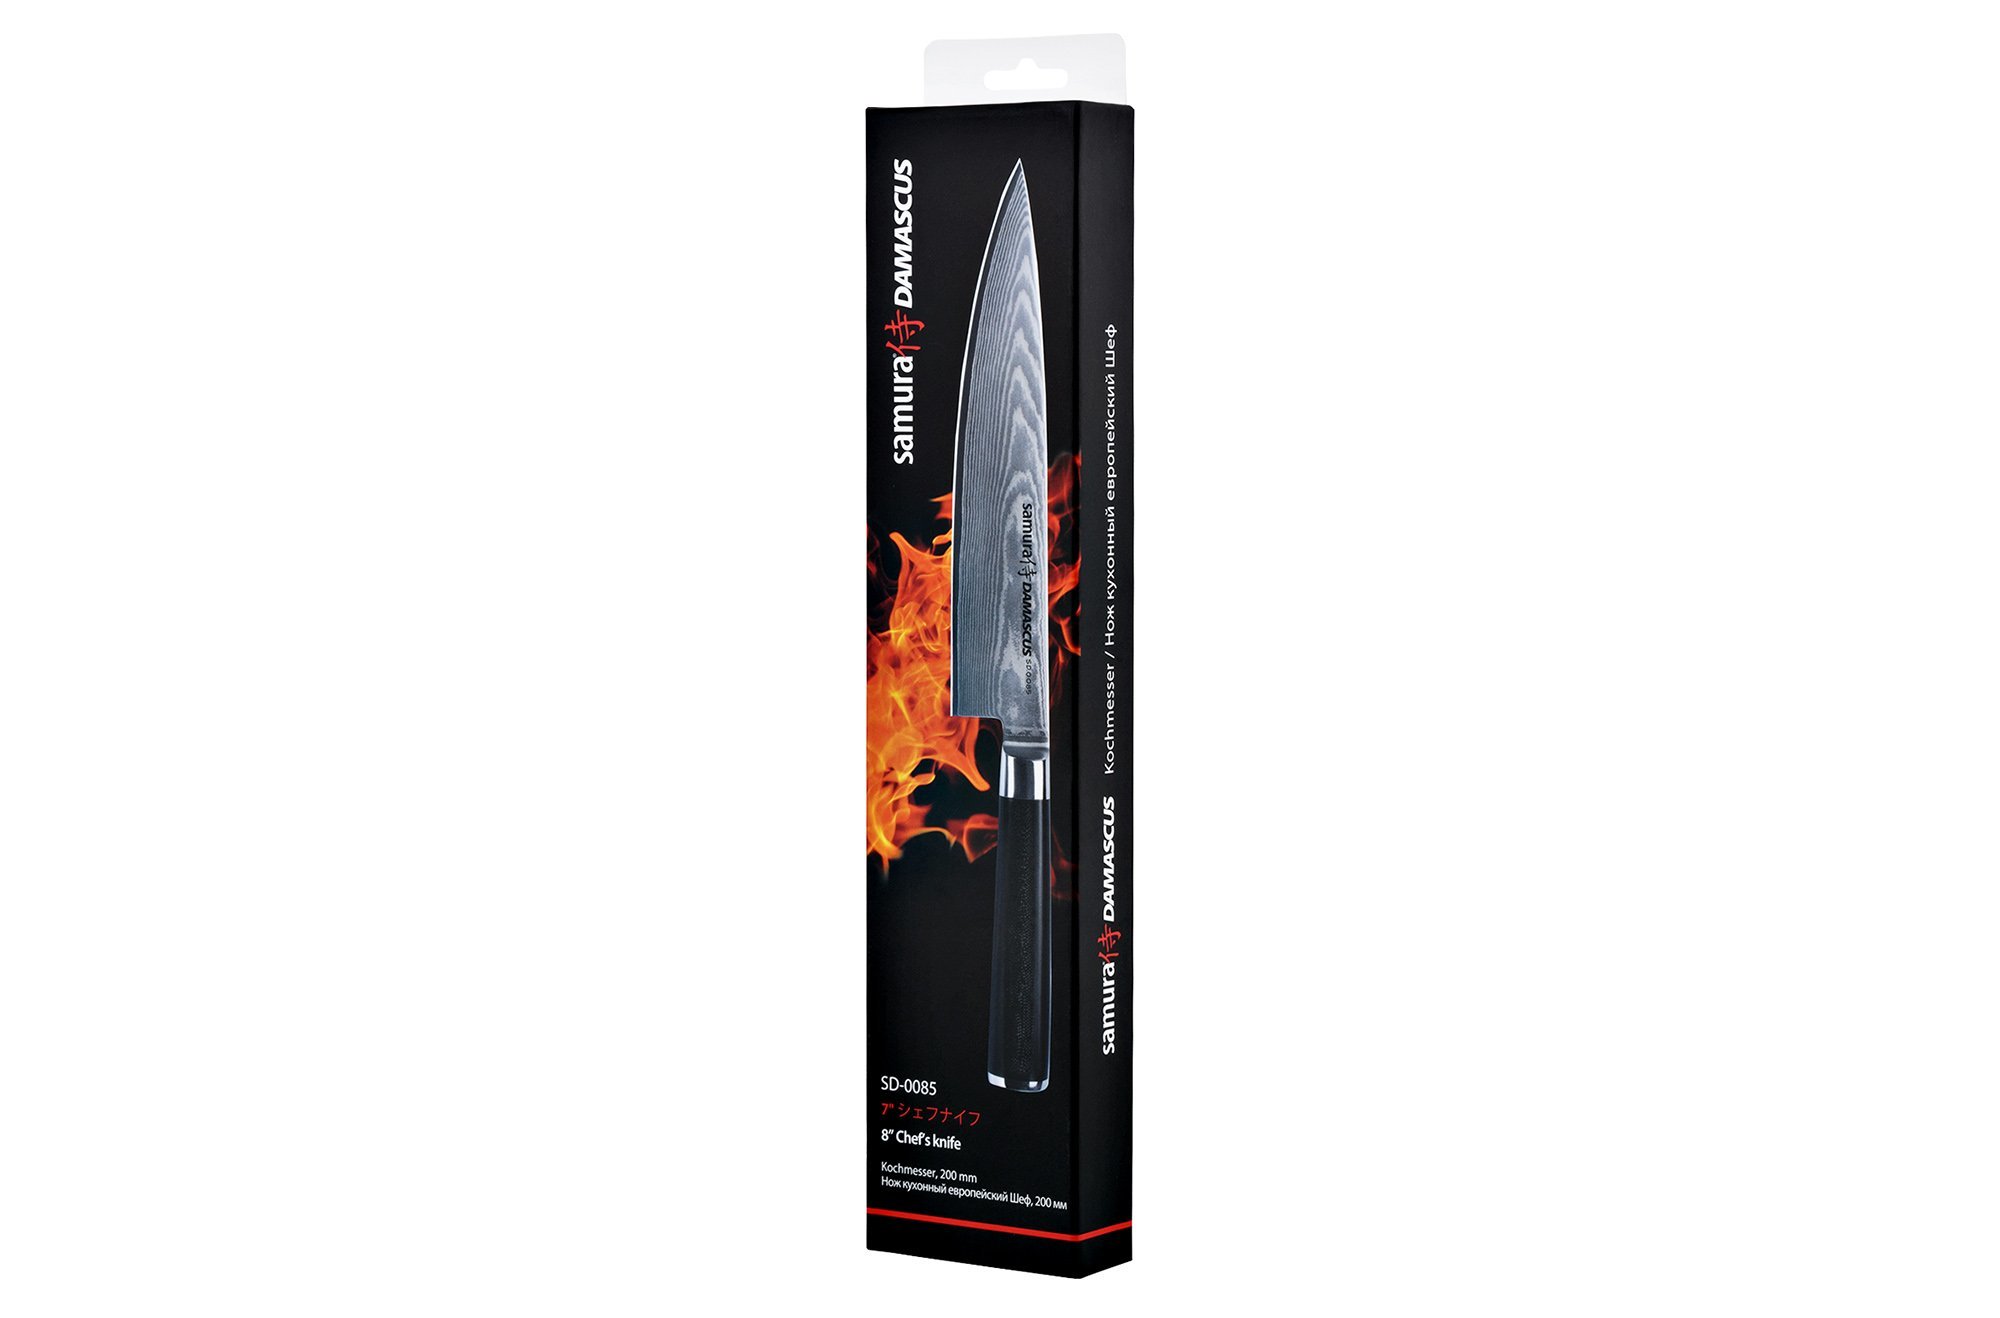 Нож кухонный Шеф Samura DAMASCUS - SD-0085, сталь V-Gold 10 и дамаск, рукоять стеклотекстолит G10, 200 мм - фото 3